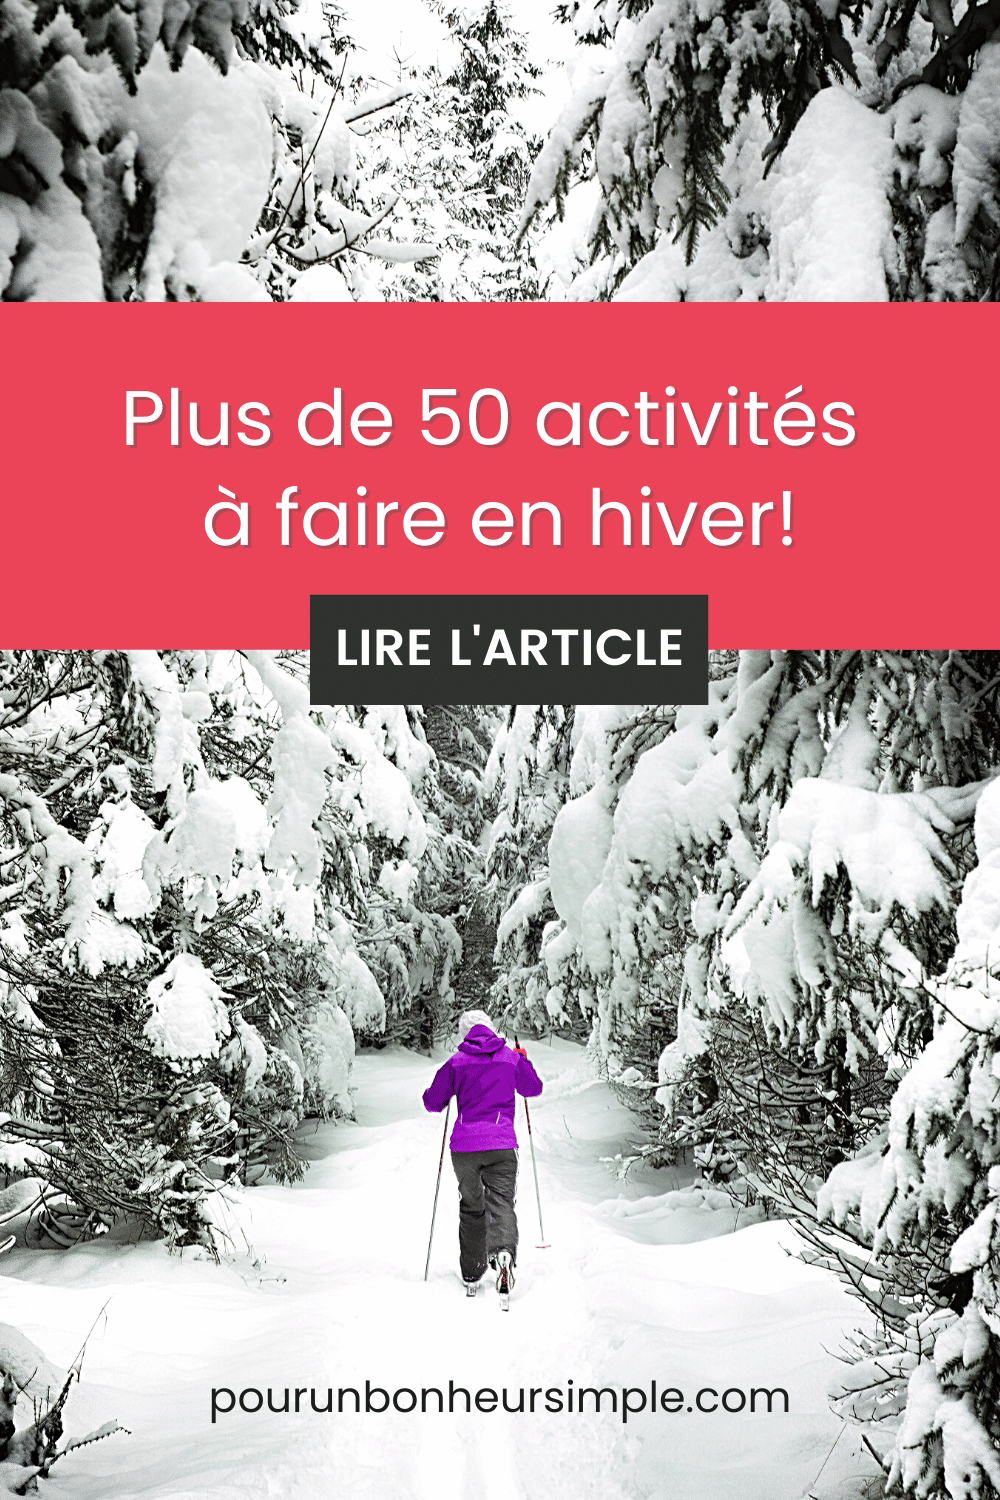 Découvrez dans ce billet plus de 50 activités à faire en hiver pour avoir du plaisir durant la saison froide. Un article du blog Pour un bonheur simple.